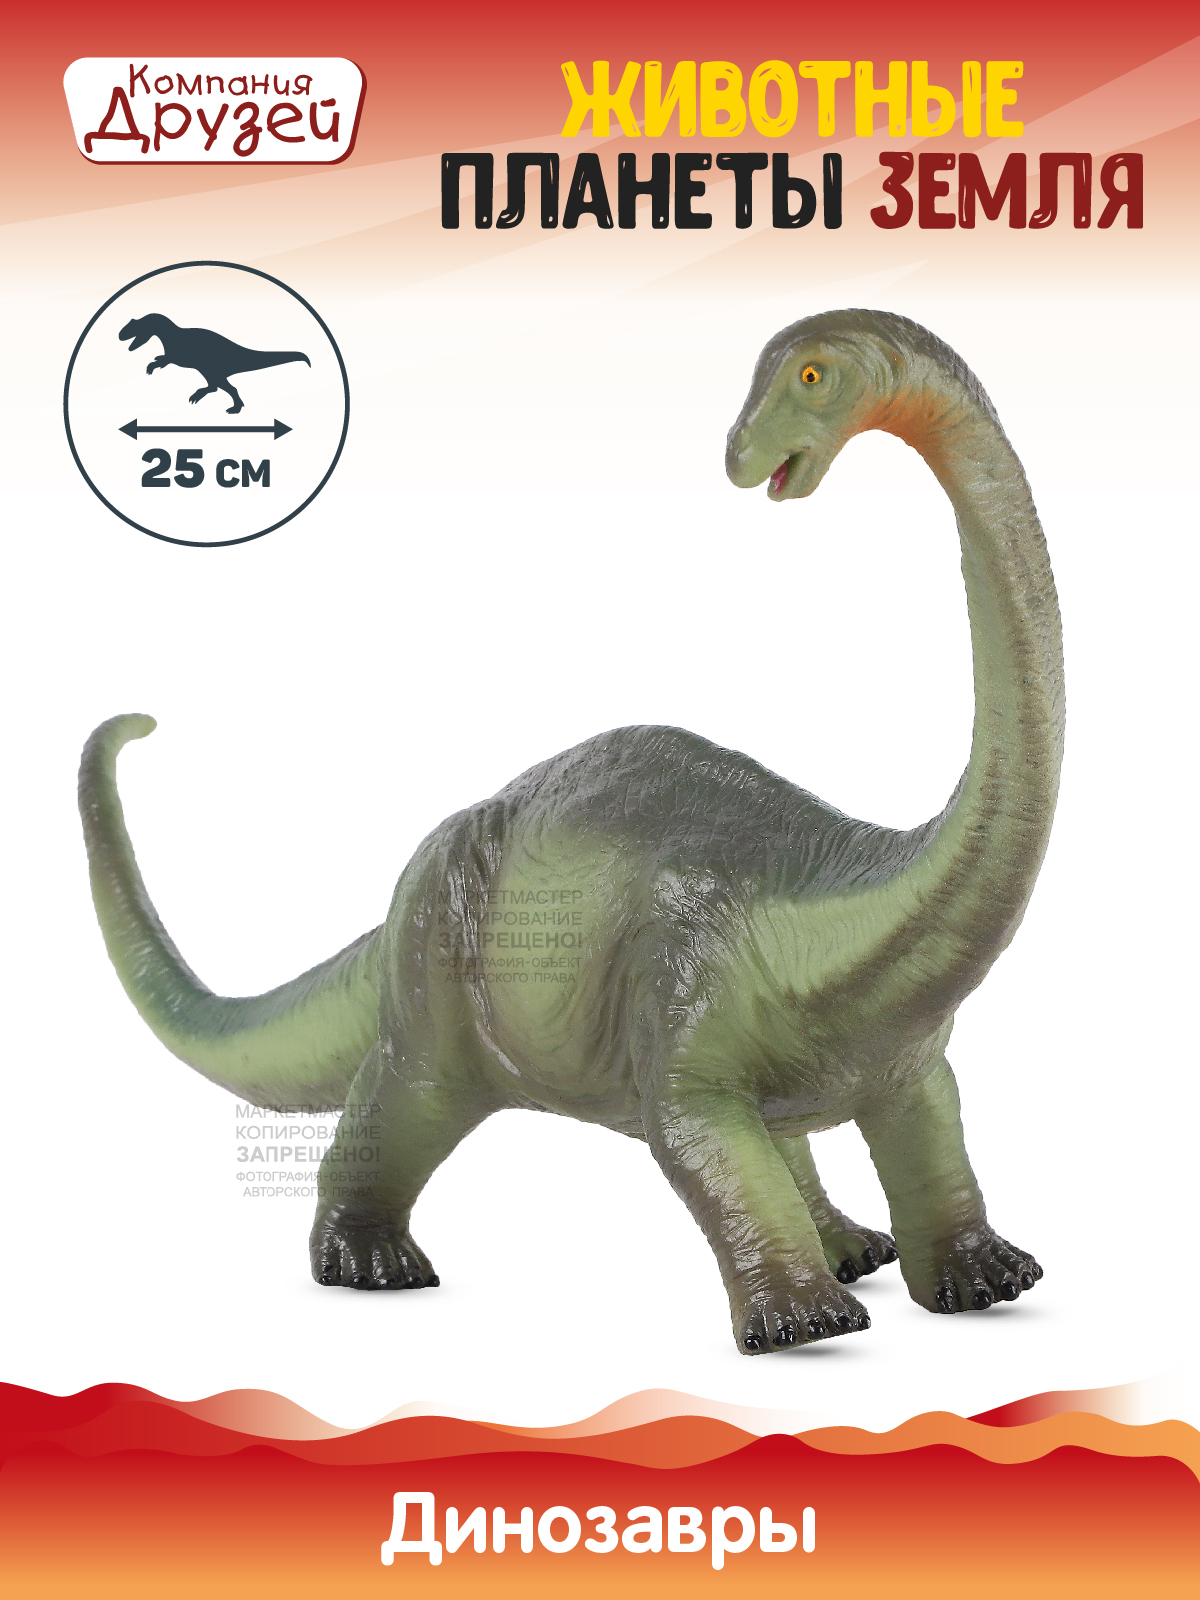 Фигурка Динозавр из серии Животные планеты Земля Компания друзей зеленый JB0208314 динозавр с чипом компания друзей животные планеты земля звук рёв животного jb0207081